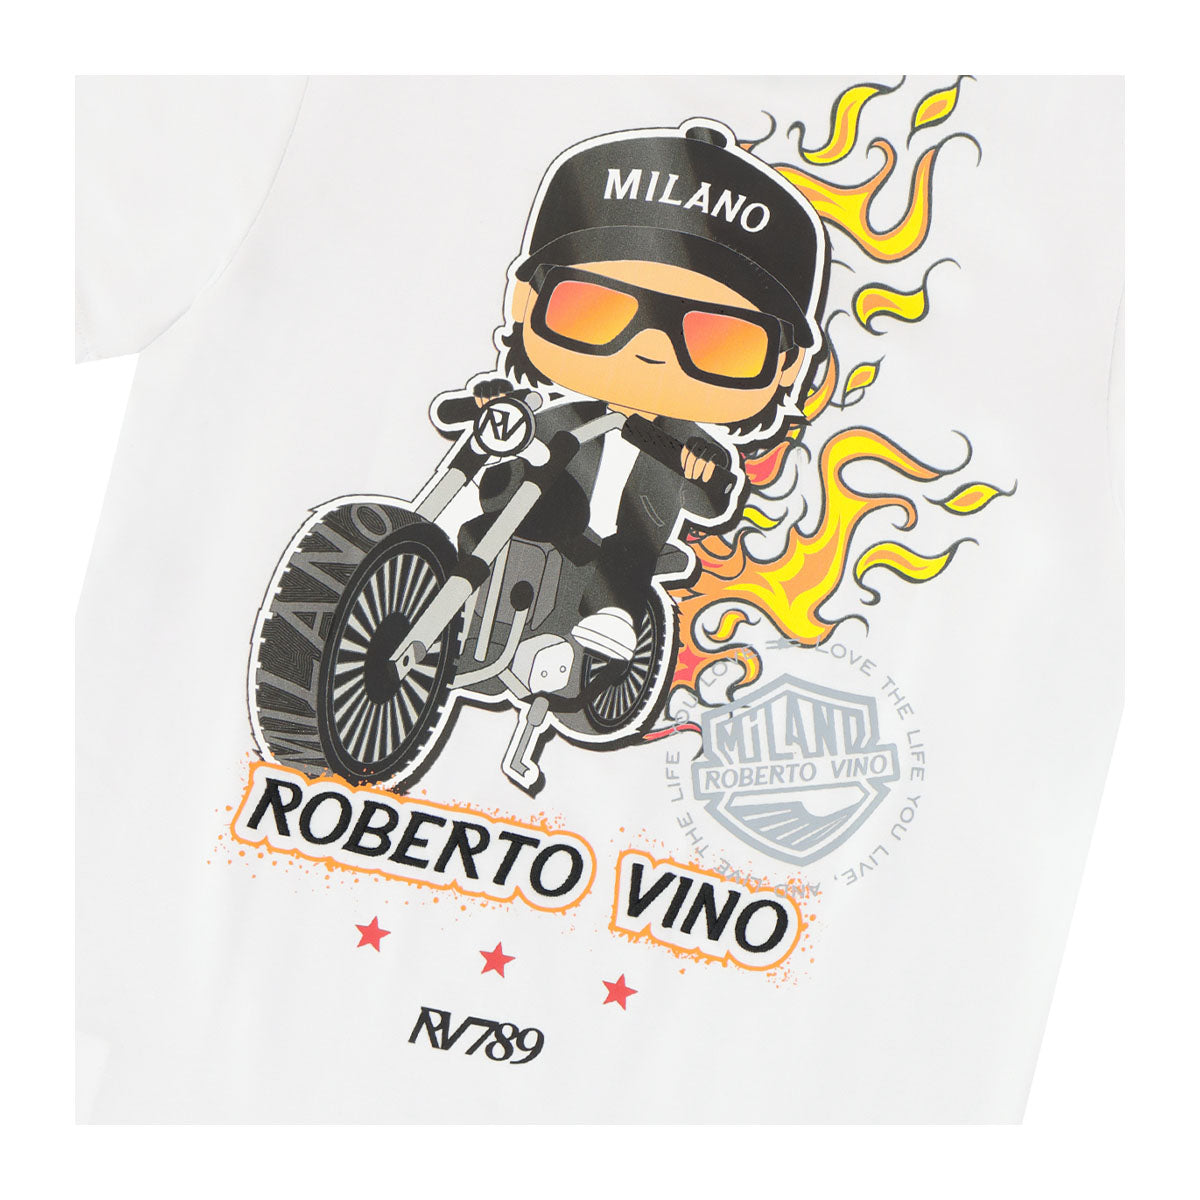 חולצת טי שרט ROBERTO VINO ילד על אופנוע לילדים